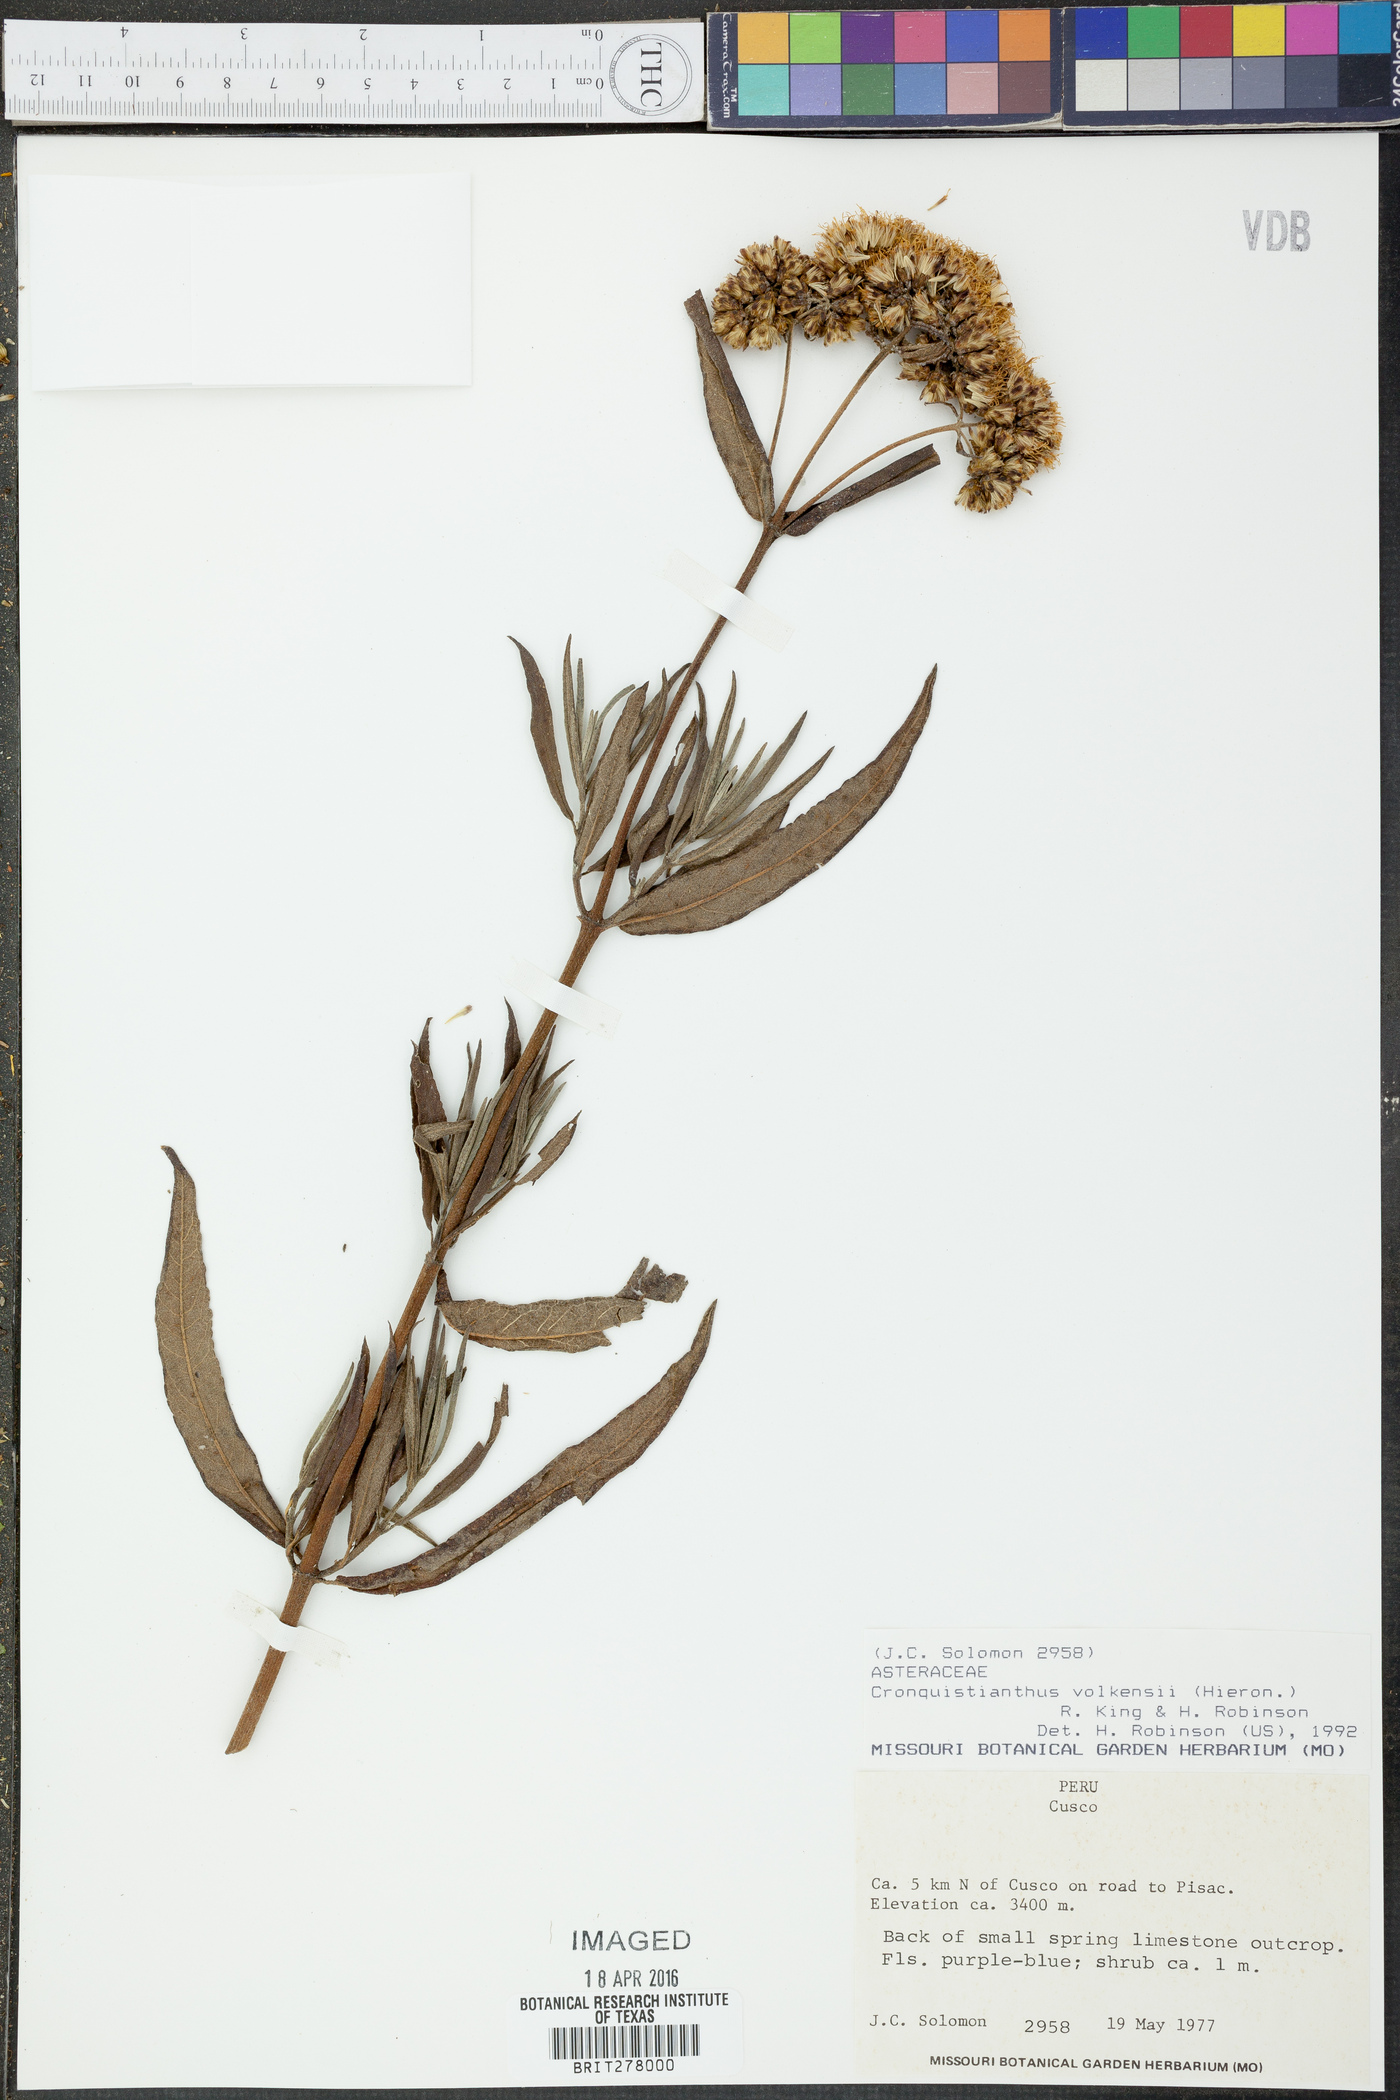 Cronquistianthus volkensii image